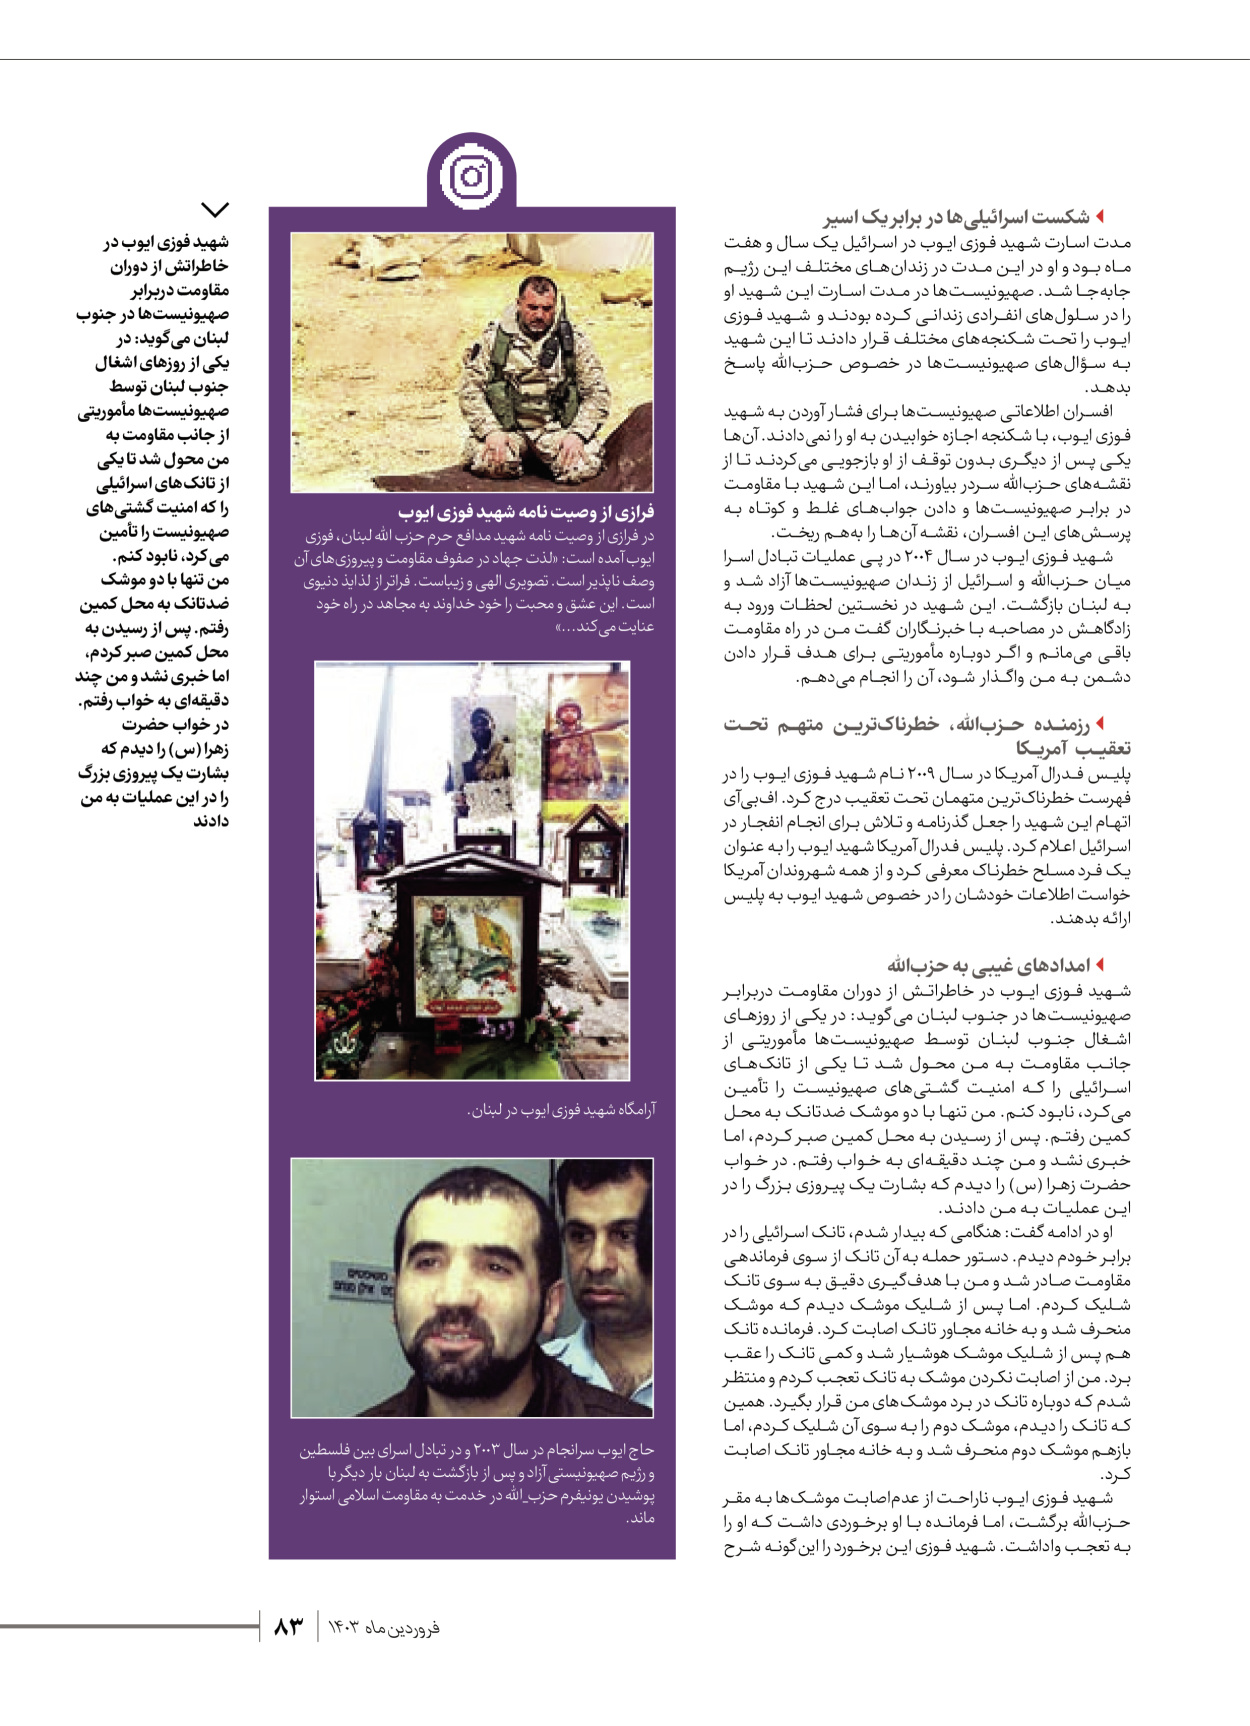 روزنامه ایران - ویژه نامه شهدای قدس ۶ - ۲۵ فروردین ۱۴۰۳ - صفحه ۸۳